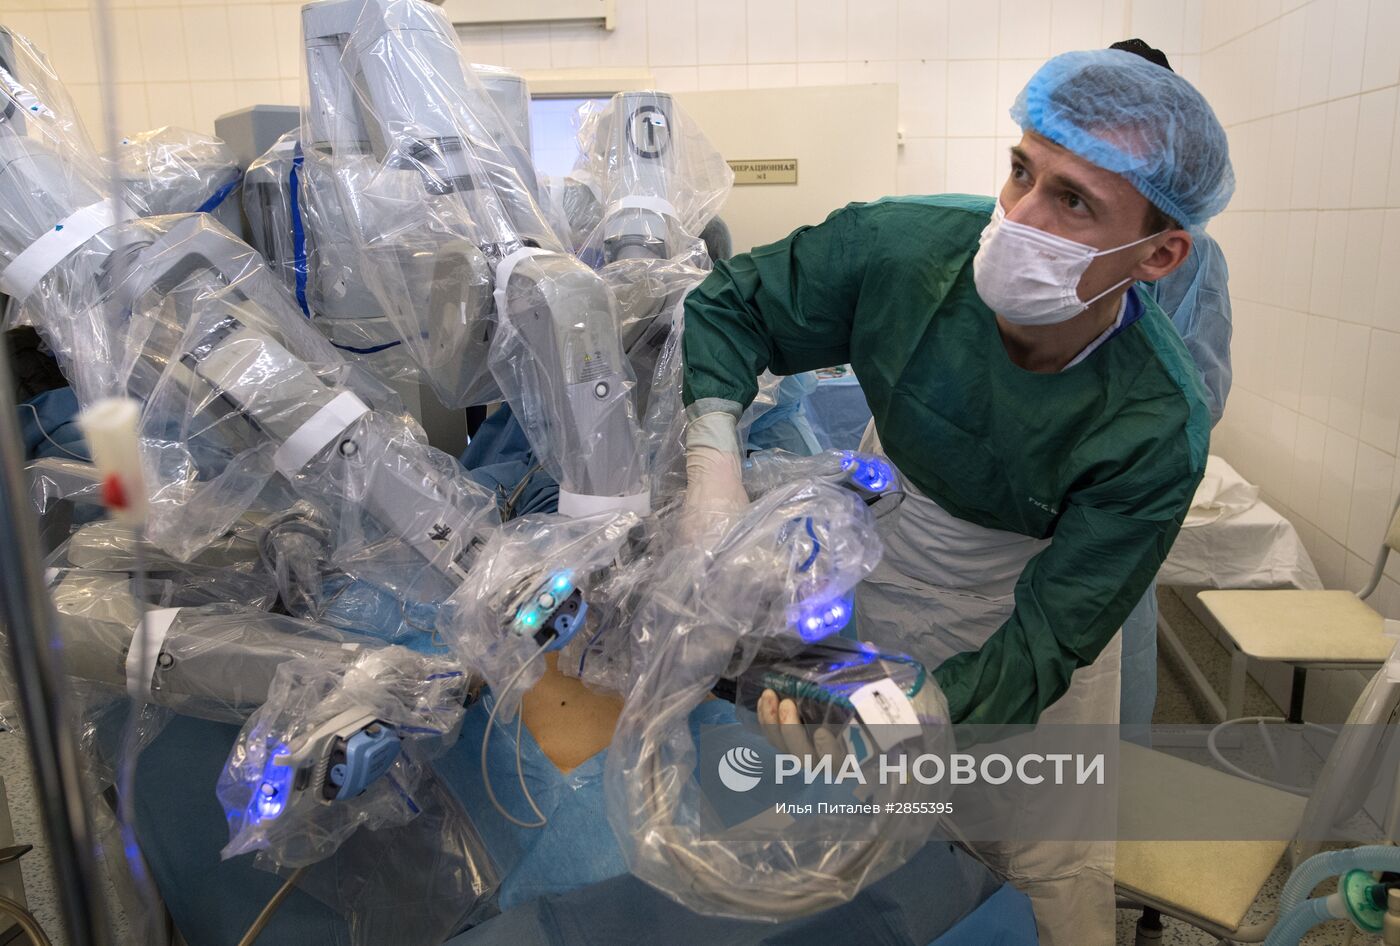 Онкологическая операция с применением робота-хирурга "Да Винчи"